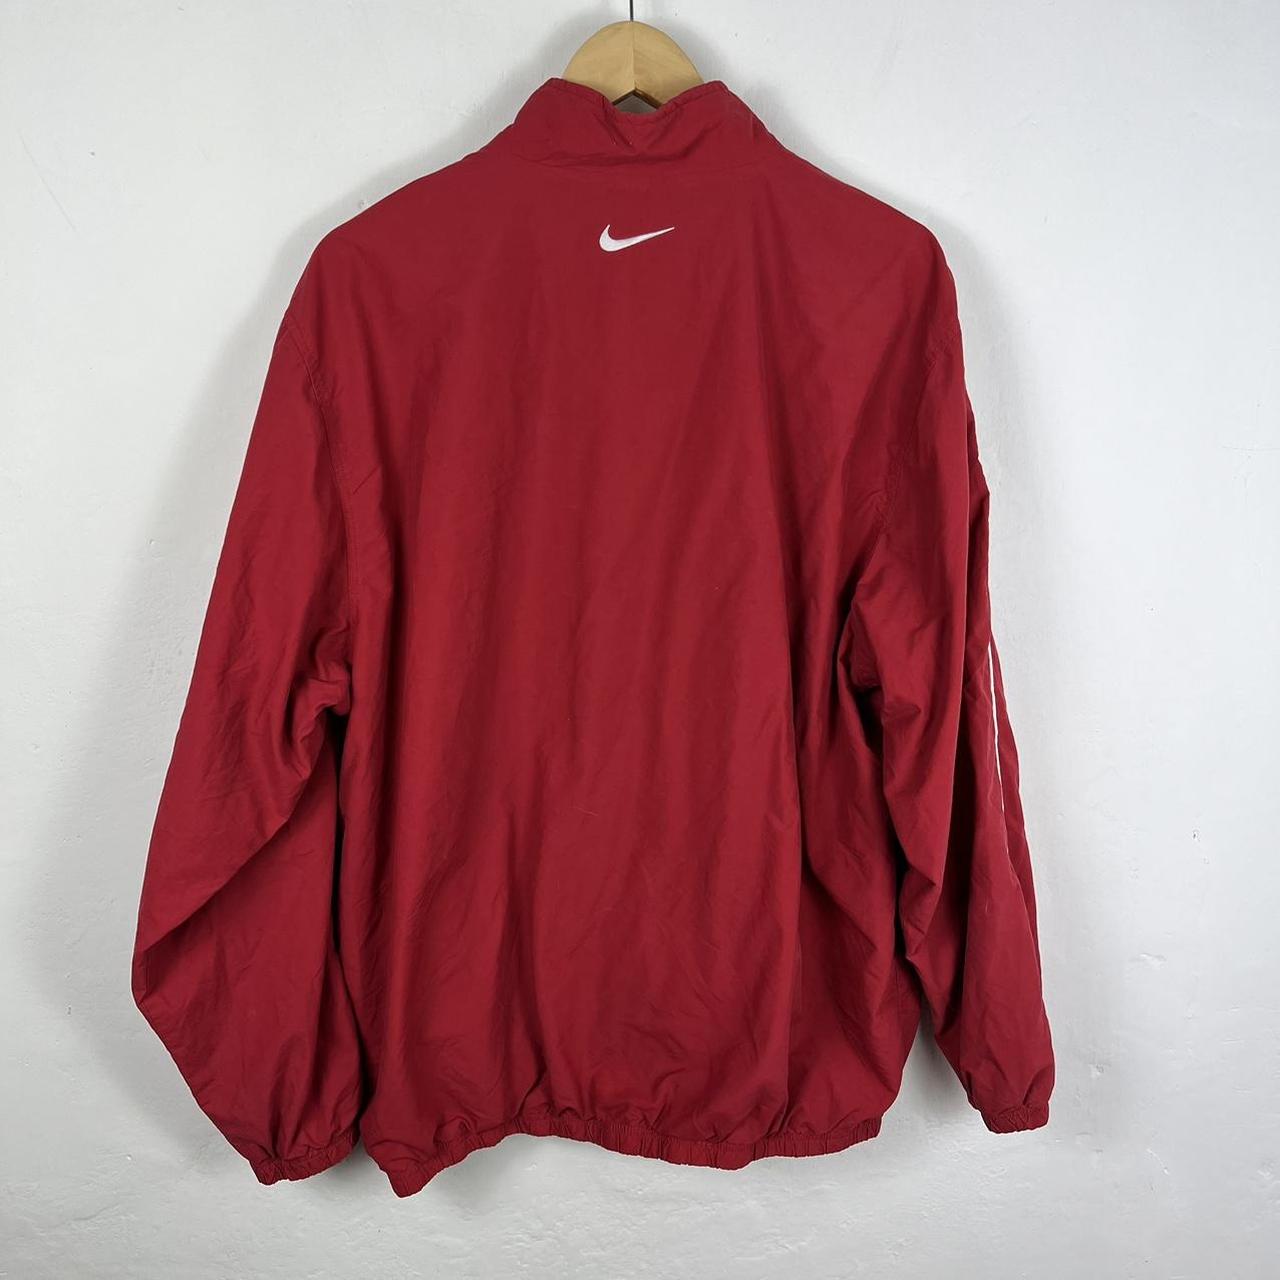 Nike track jacket XL